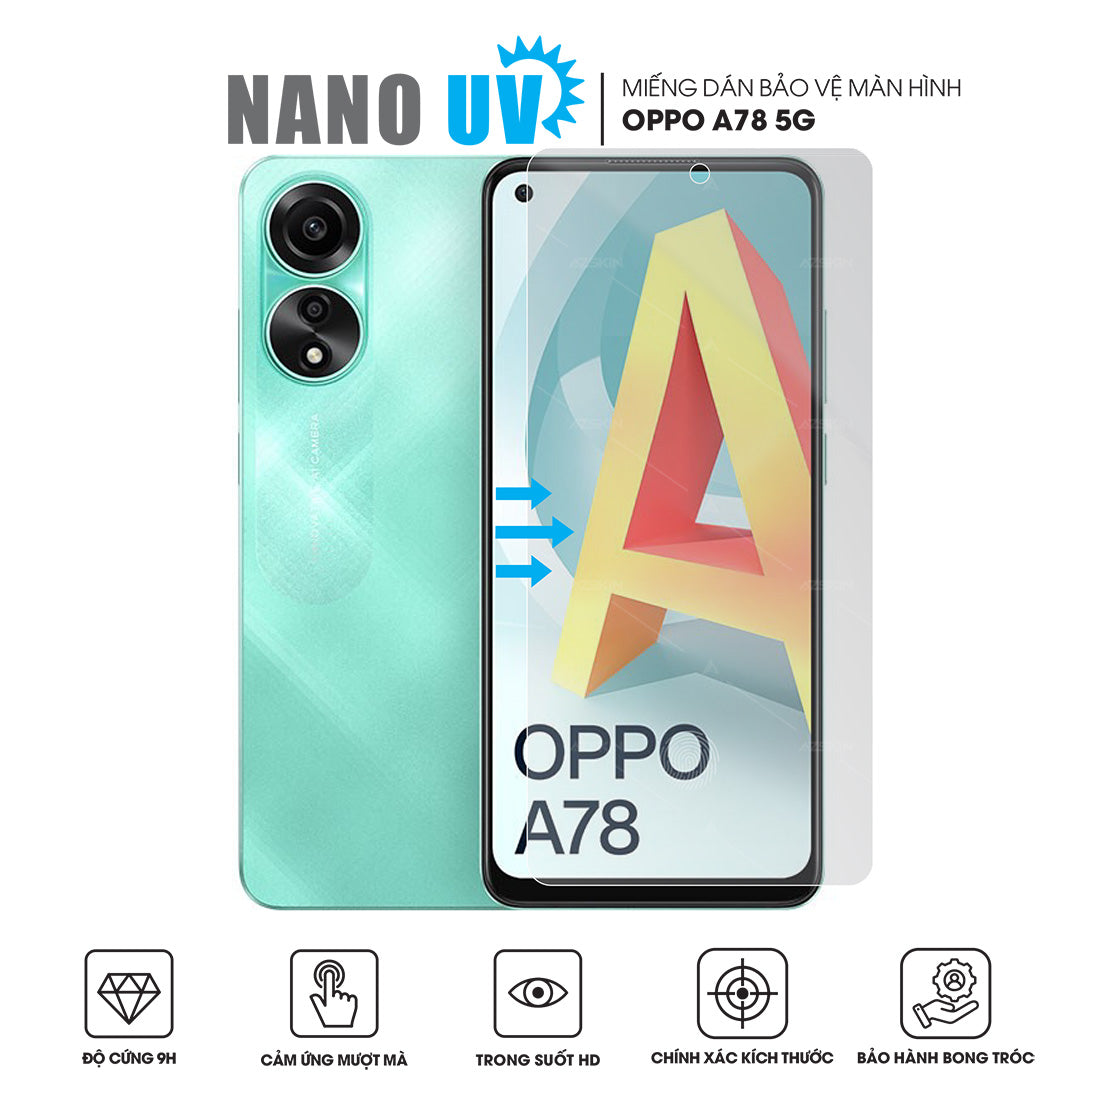 Miếng dán màn hình Nano UV OPPO A78